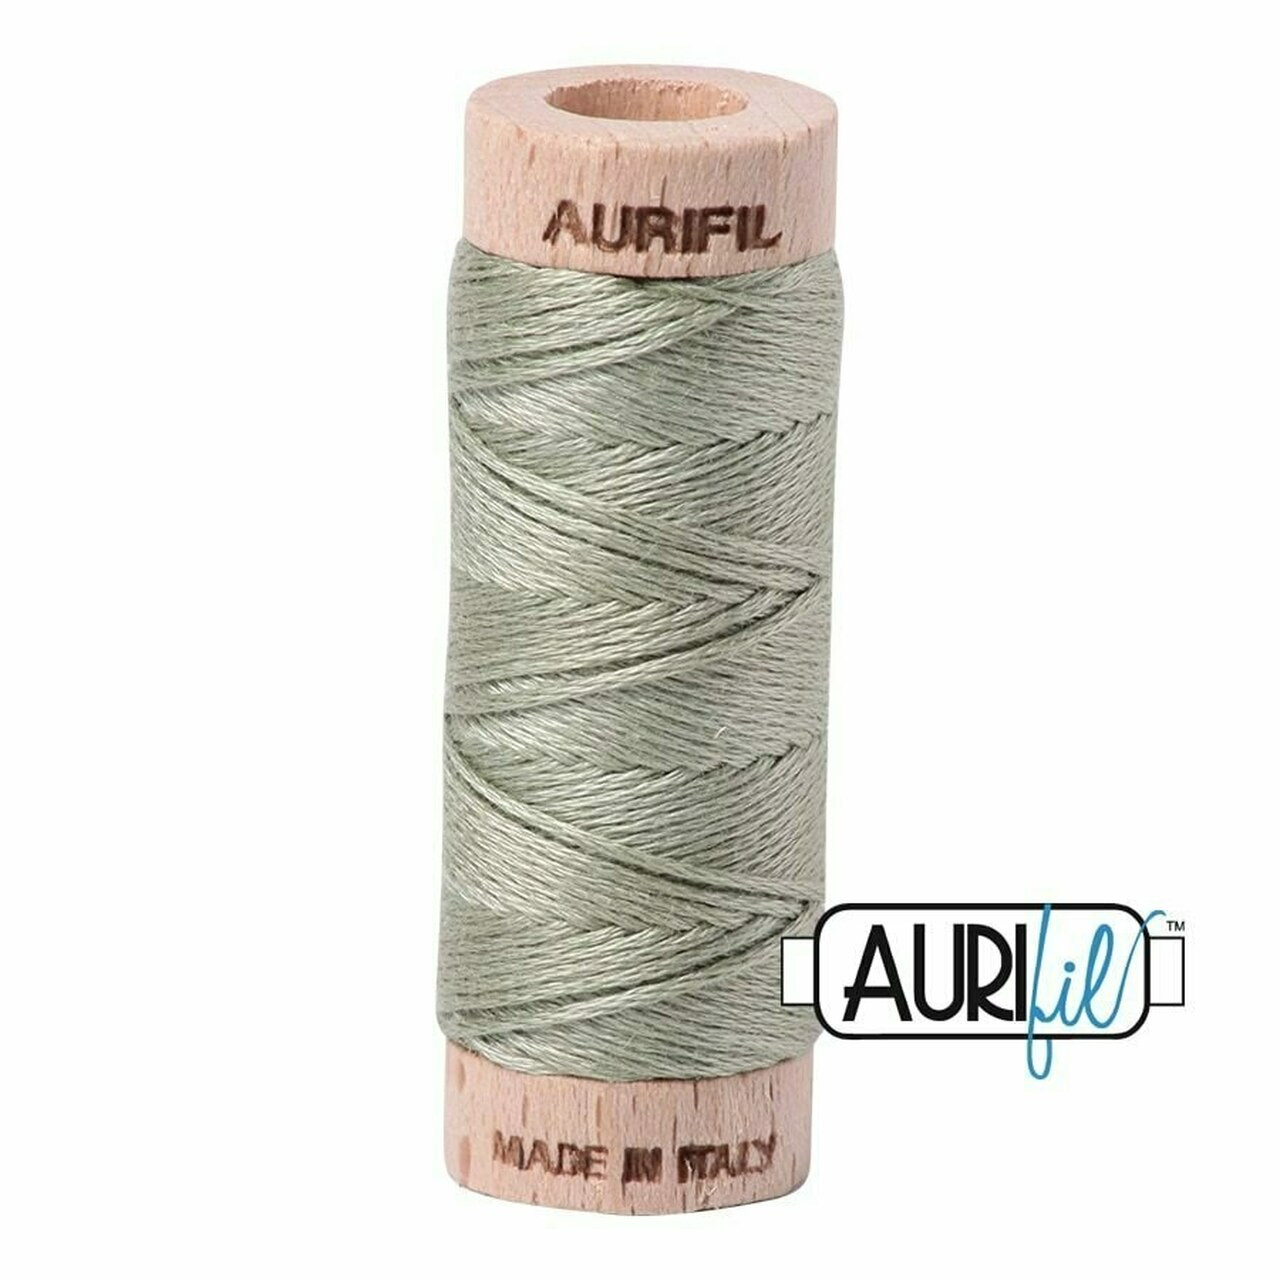 Aurifil 2902 - Light Laurel Green